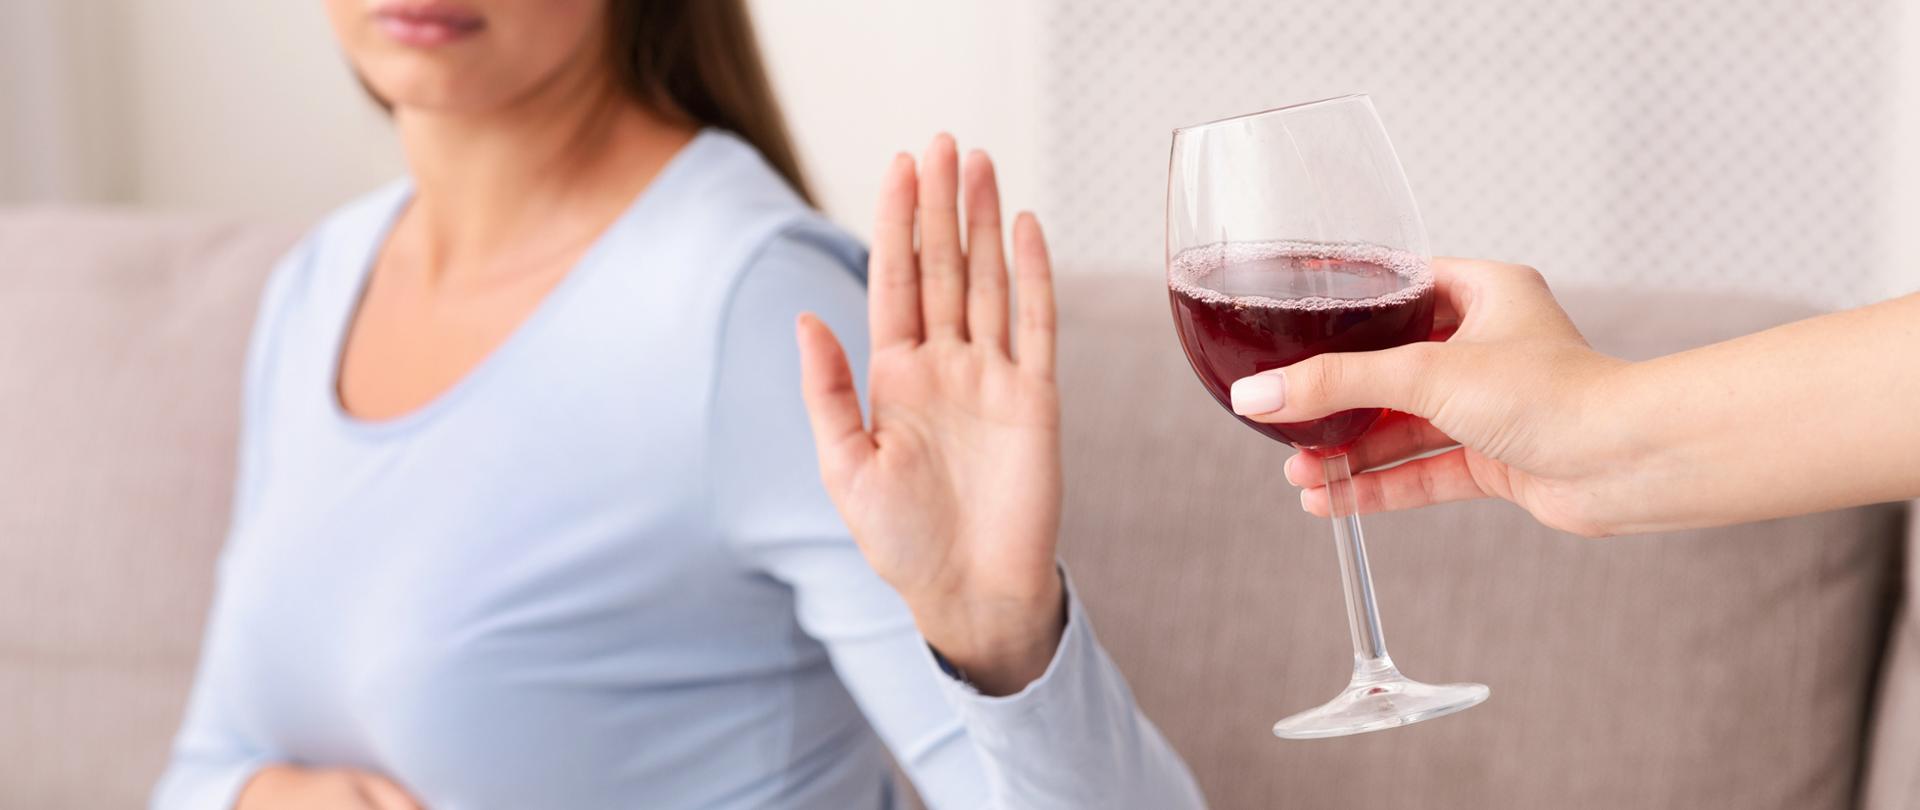 Kobieta w ciąży, siedząca na kanapie w pomieszczeniu gestykulując, odmawia przyjęcia kieliszka z czerwoną substancją przypominającą wino. 